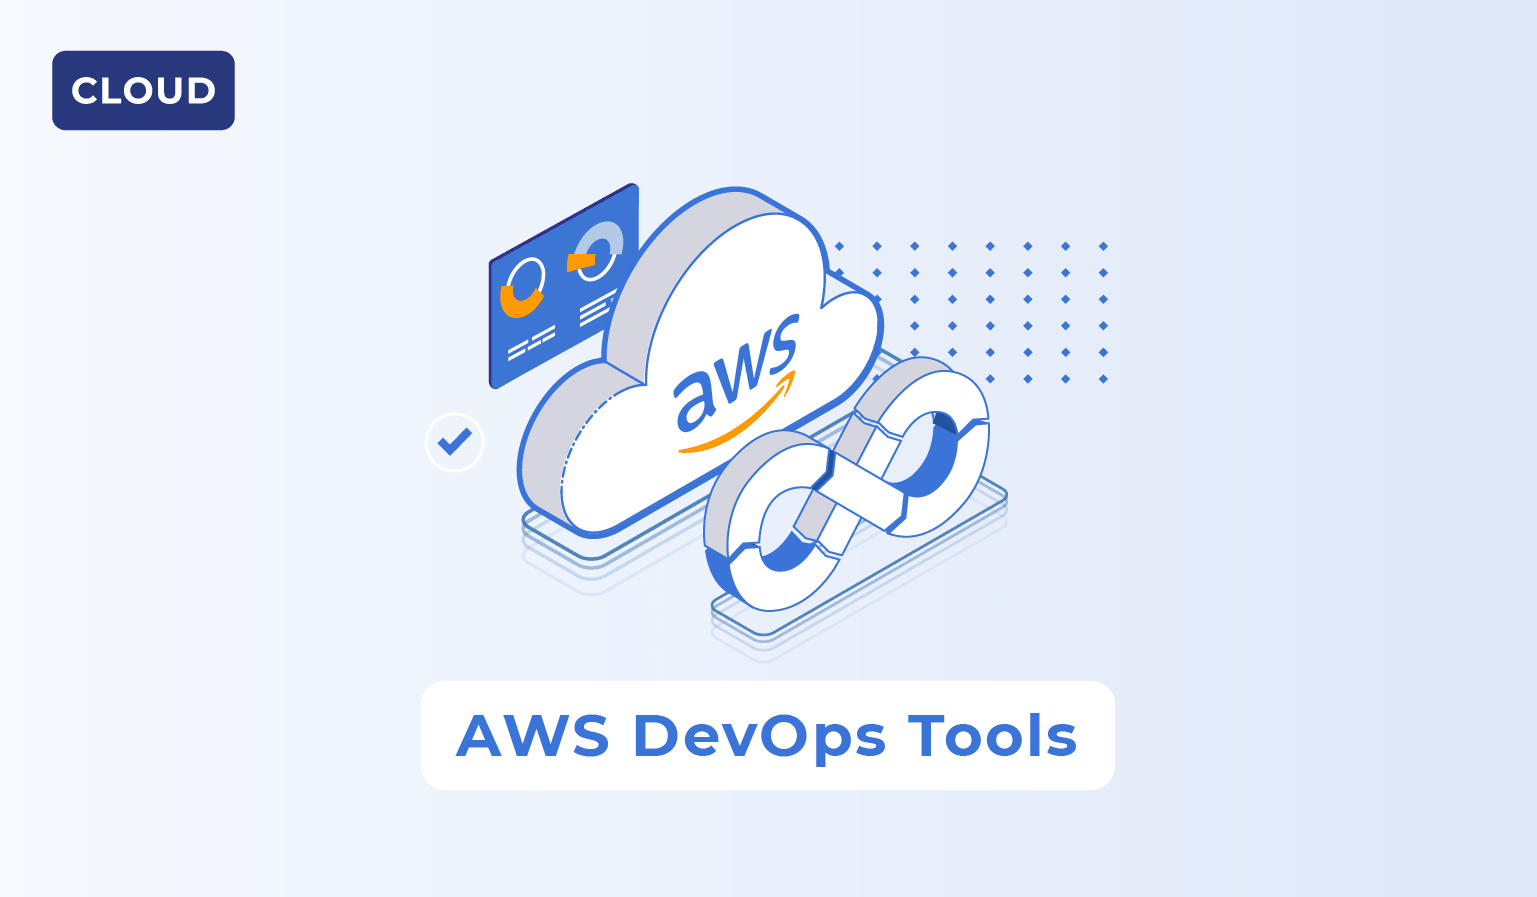 AWS Developer Tools